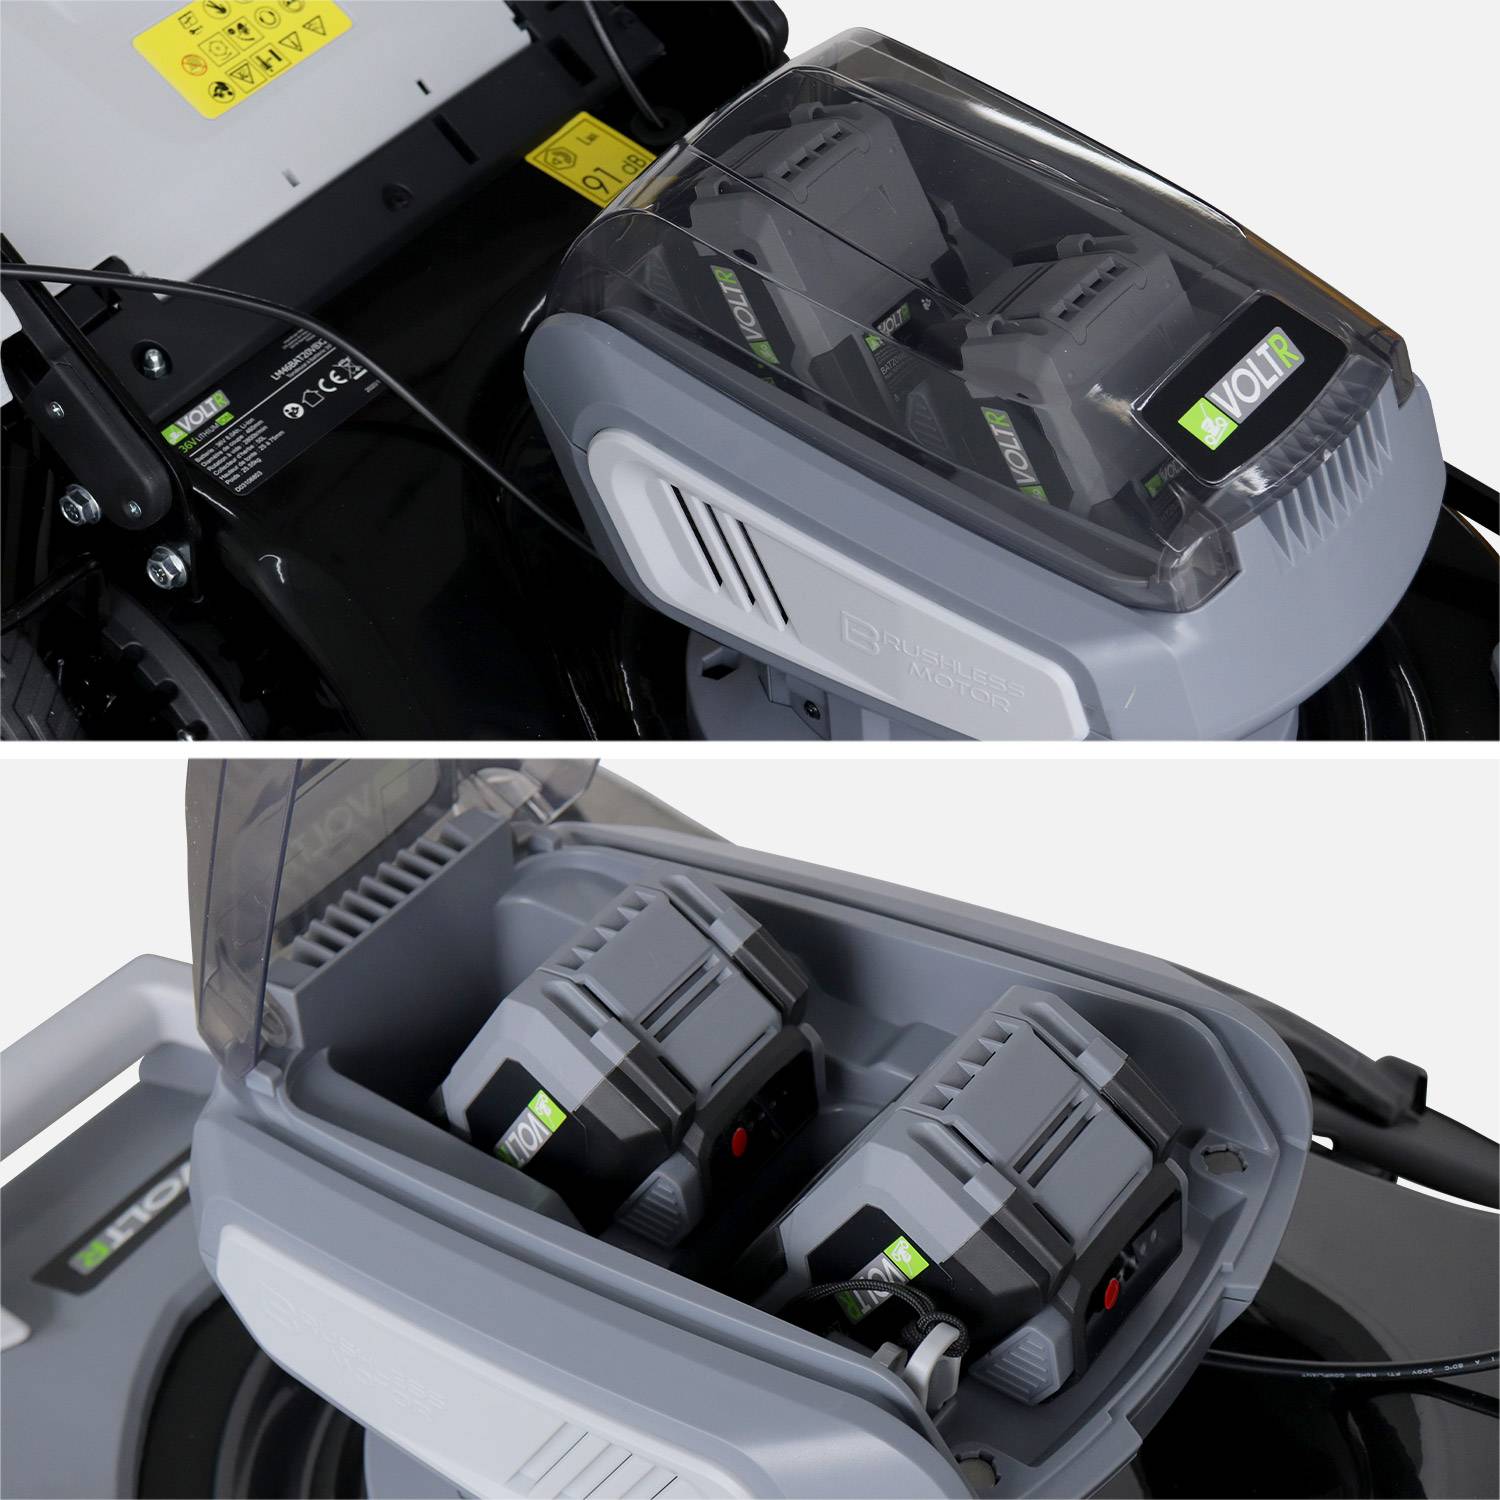 VOLTR 36V – Tondeuse à gazon sans fil tractée Ø46cm – 2x Batteries 18V Lithium 8.0Ah + double chargeur rapide, récupérateur d’herbe 50L Photo4